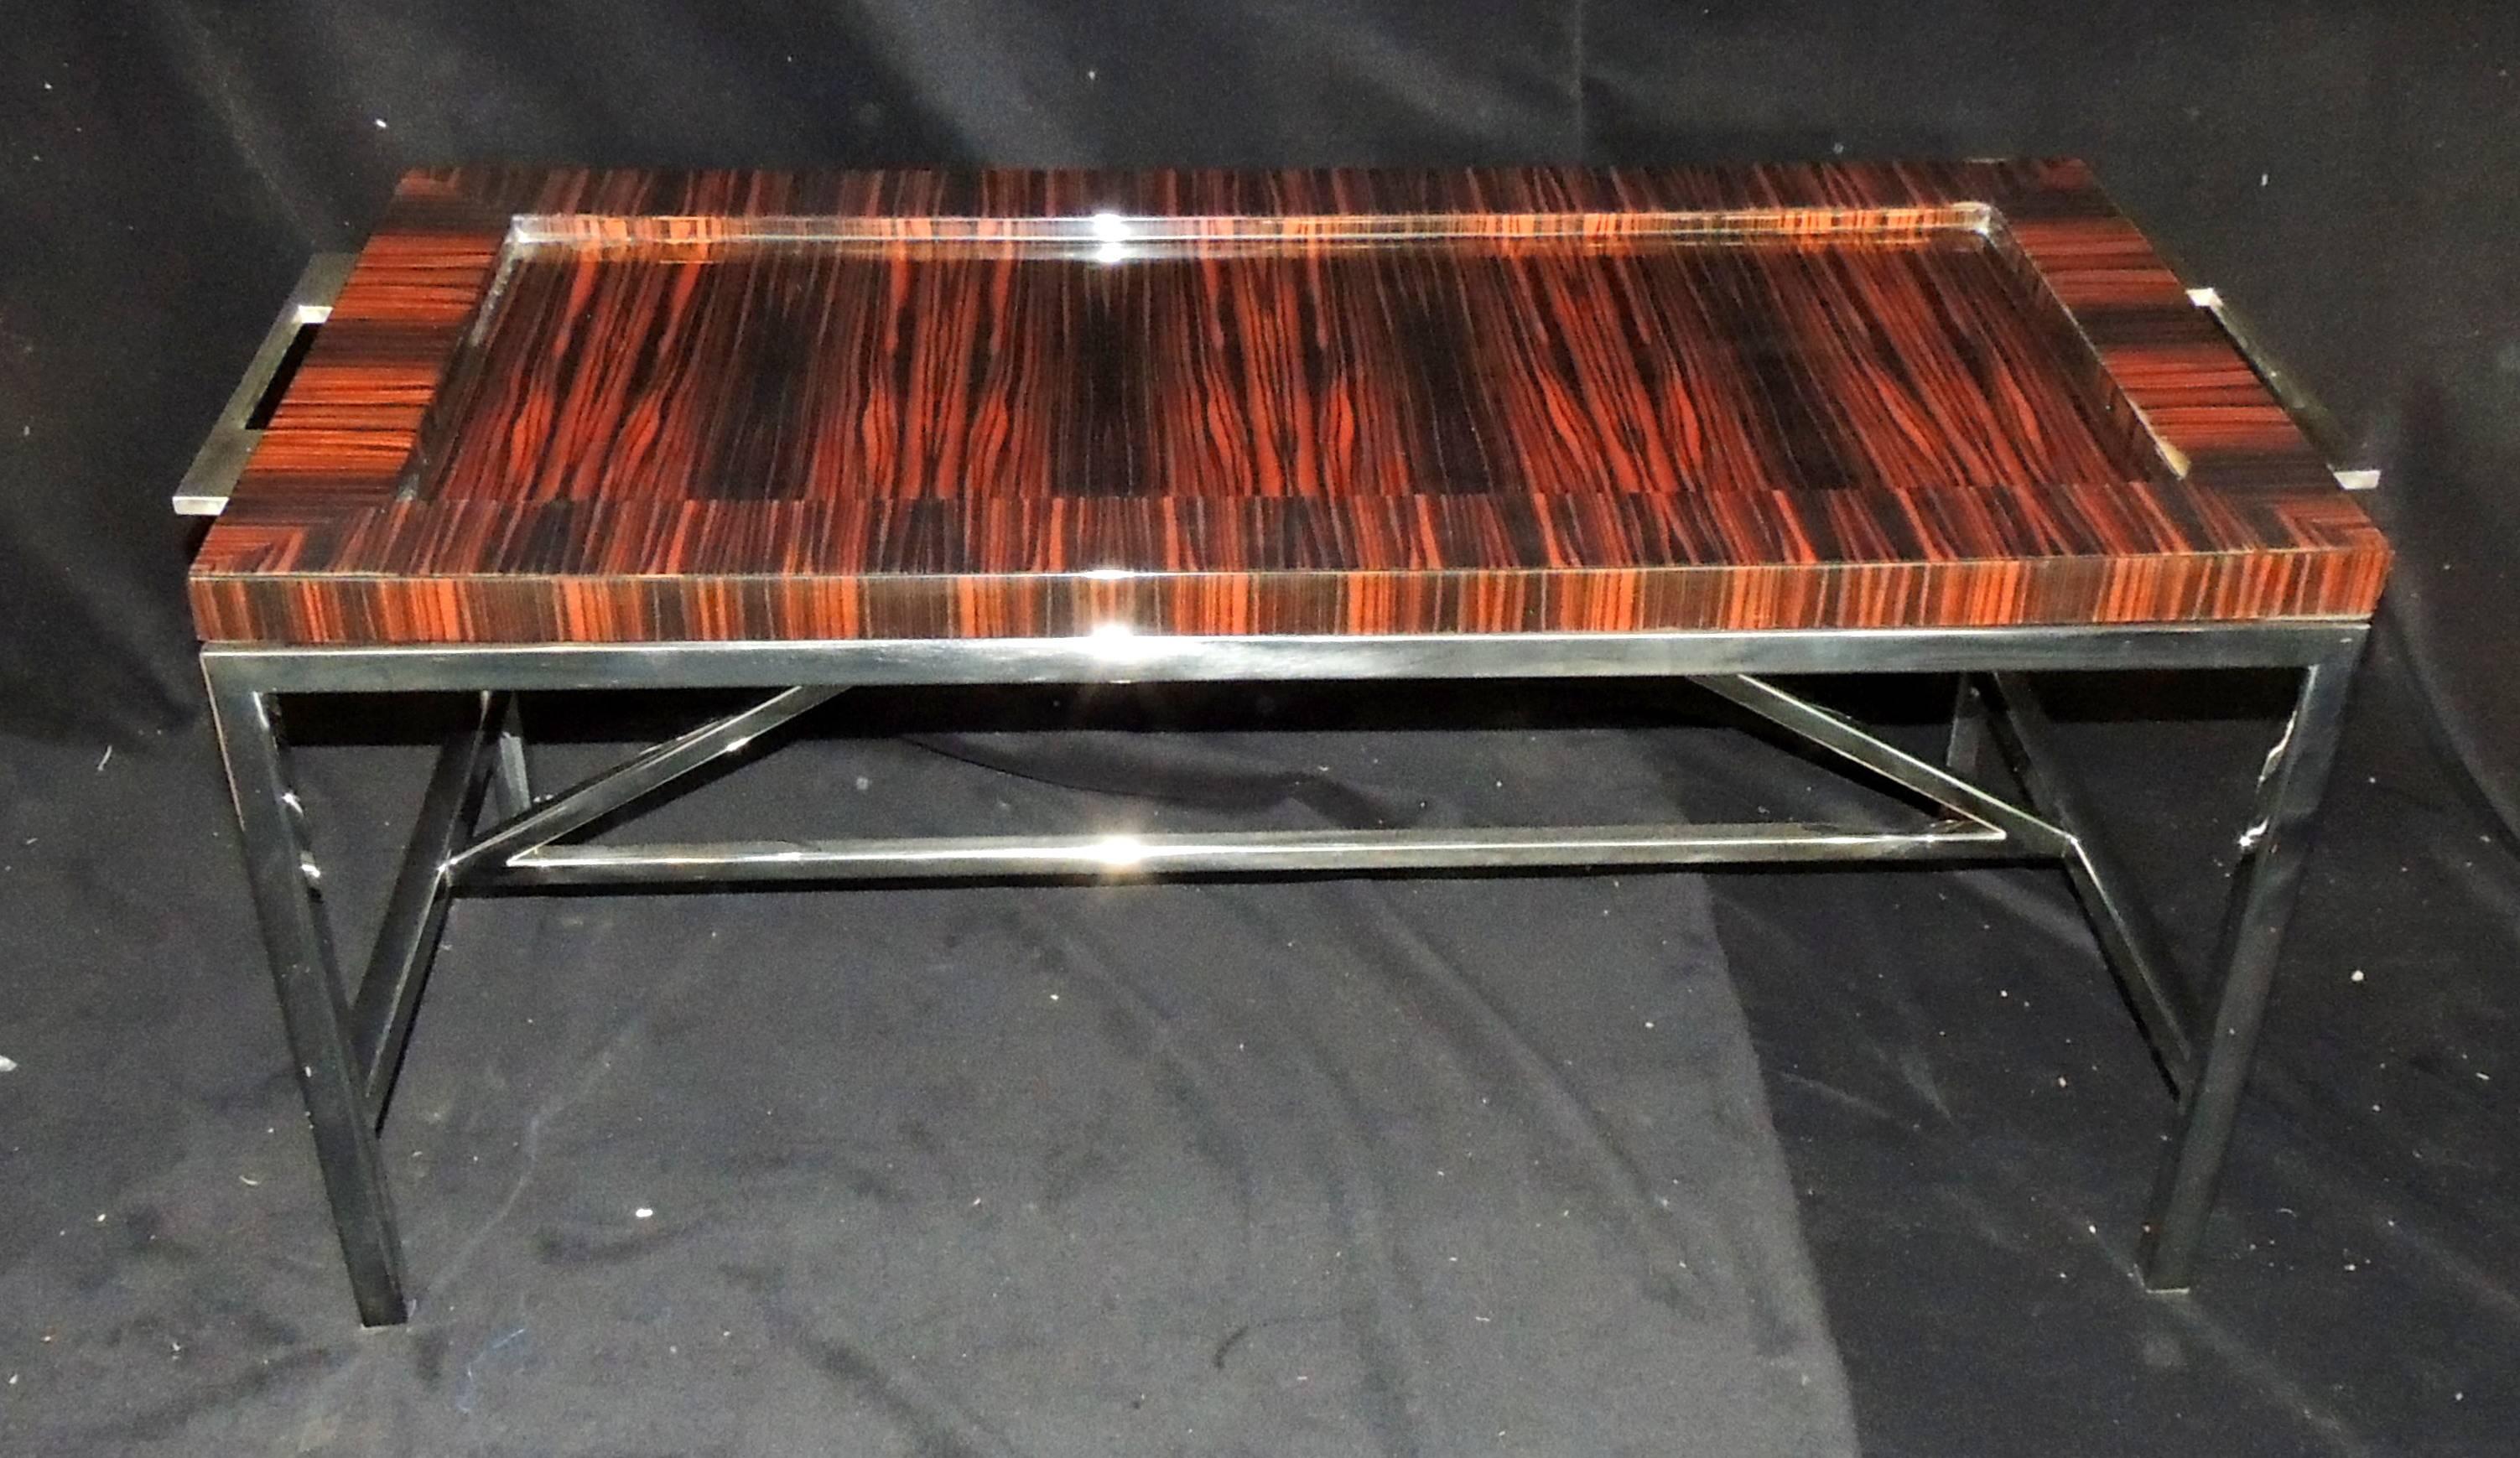 Magnifique table basse Art Déco à plateau amovible en ébène de Macassar et nickel poli, avec base et poignée latérale. Acheté à Lorin Marsh.
Le dessus de la table présente un petit défaut de finition.
Mesure : 42 1/2